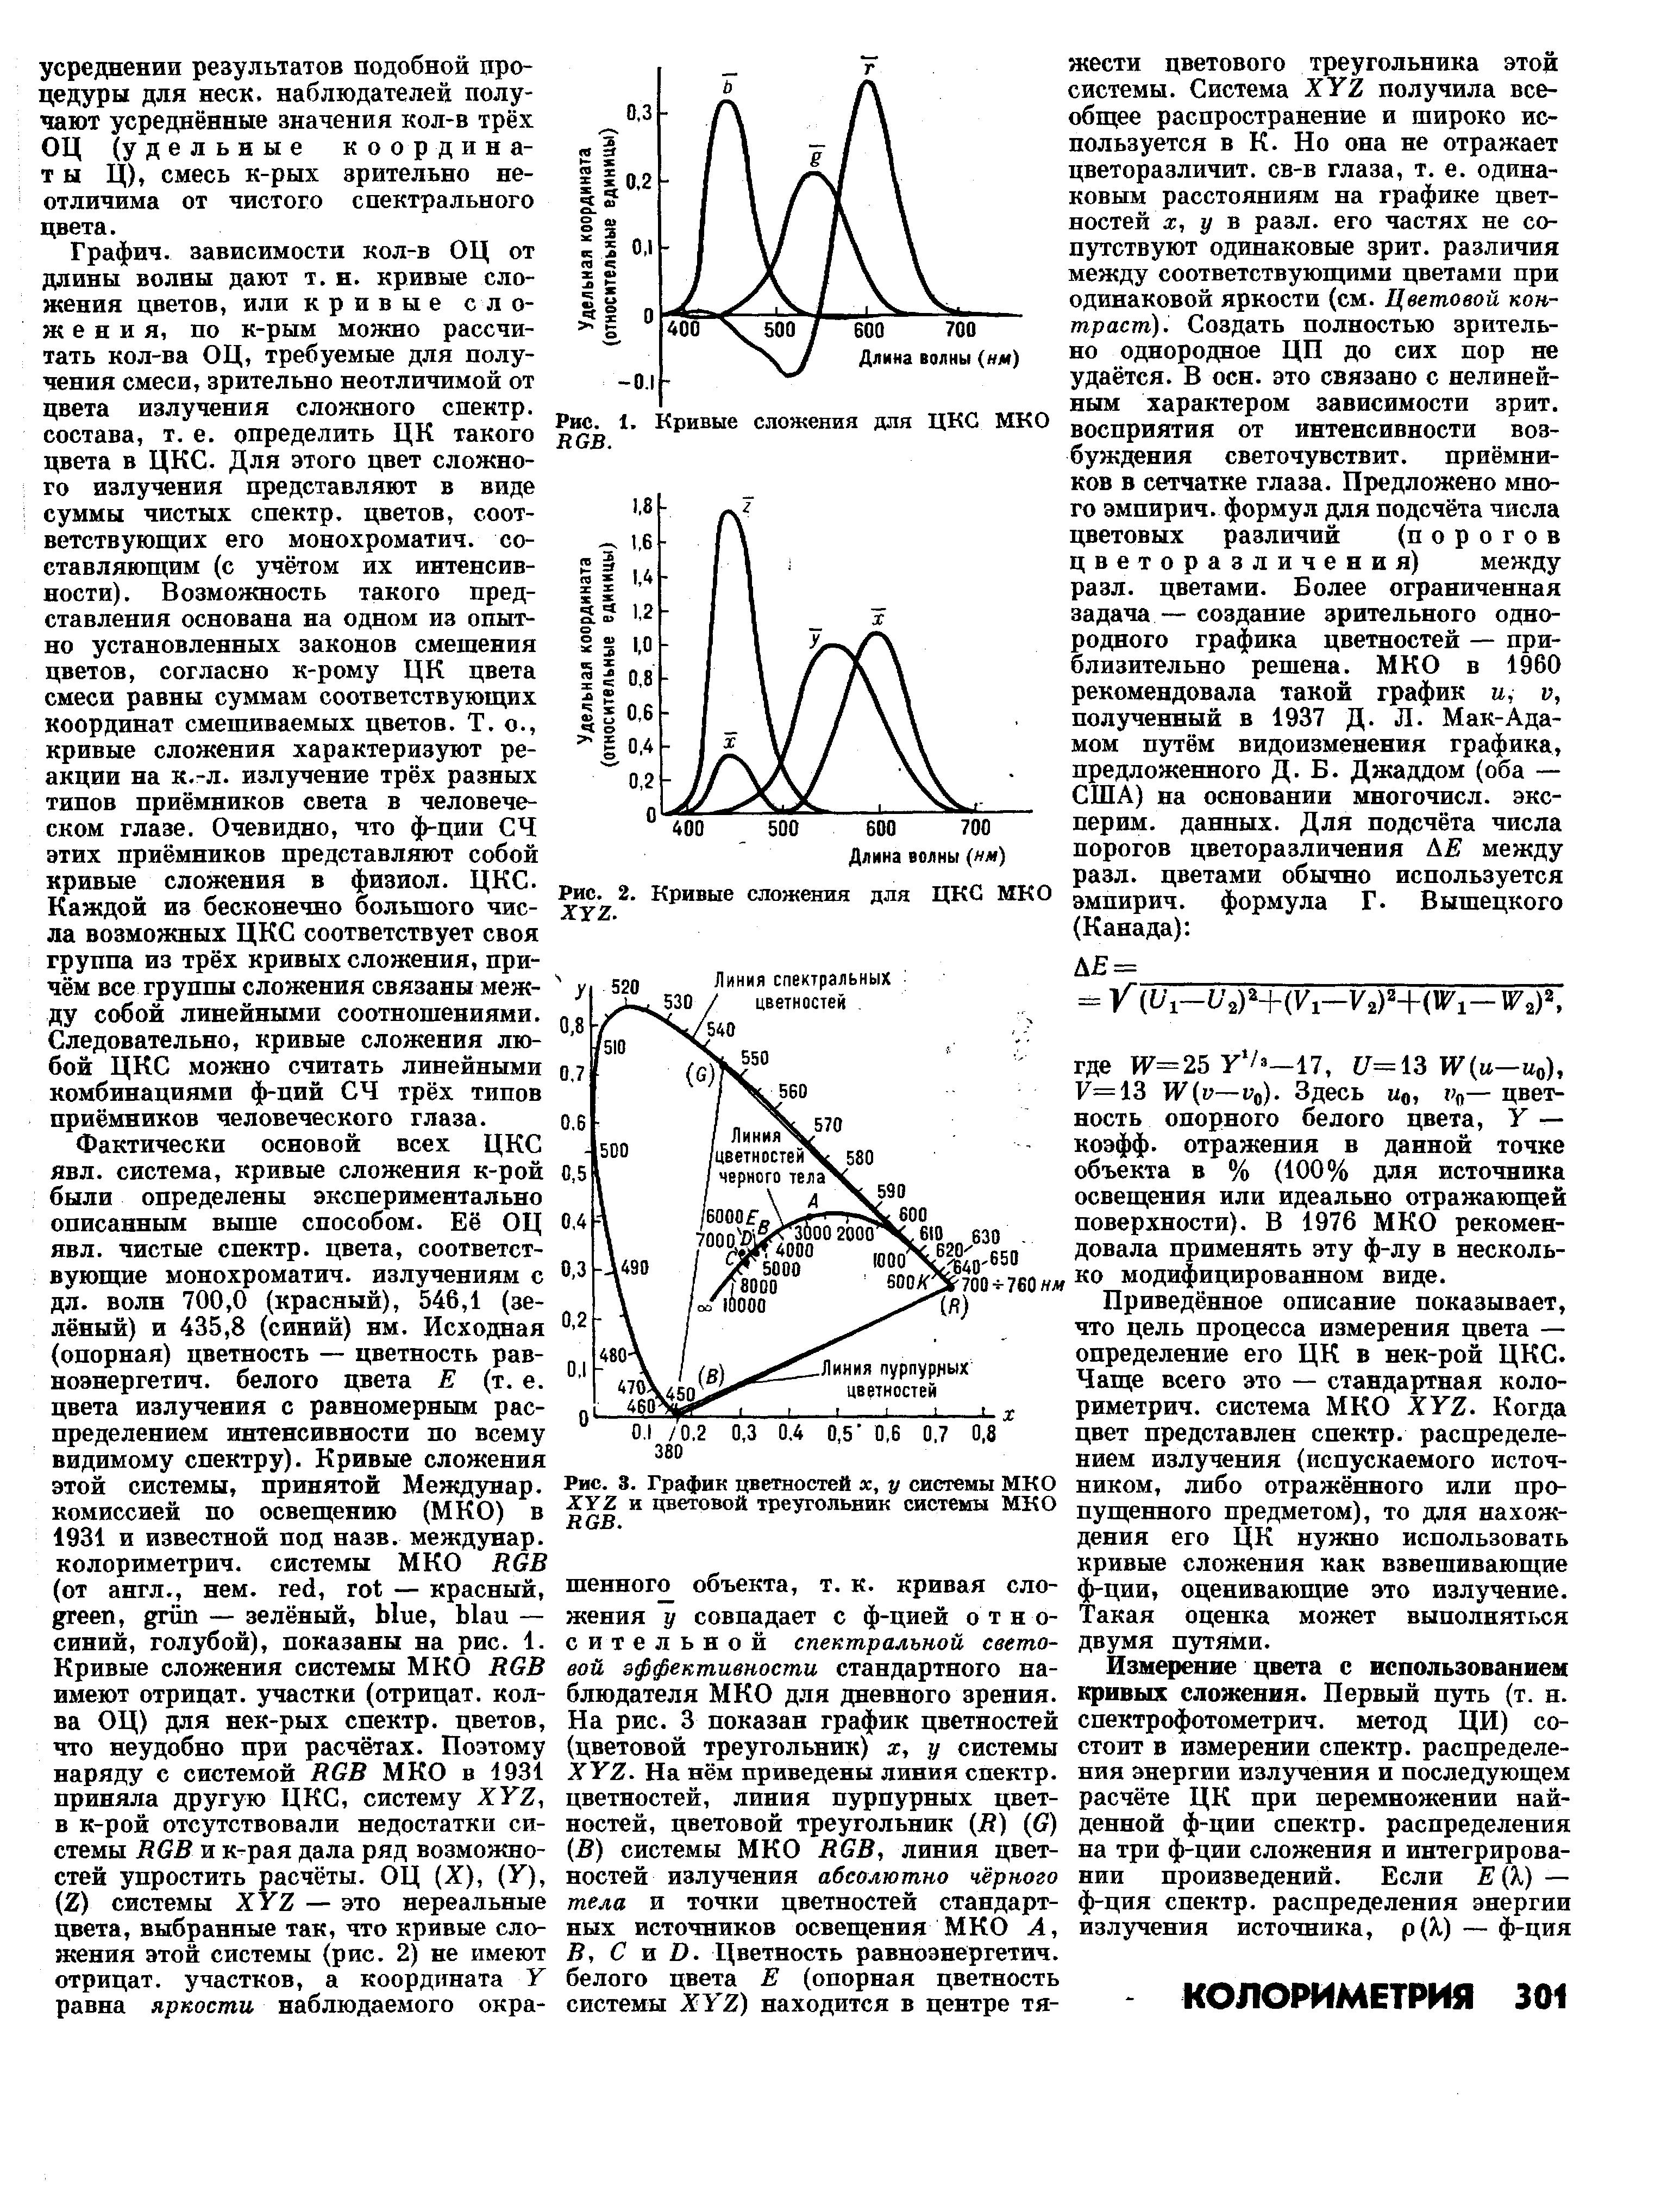 Рис. 3. График цветностей х, у системы МКО Х 2 и цветовой треугольник системы МКО
